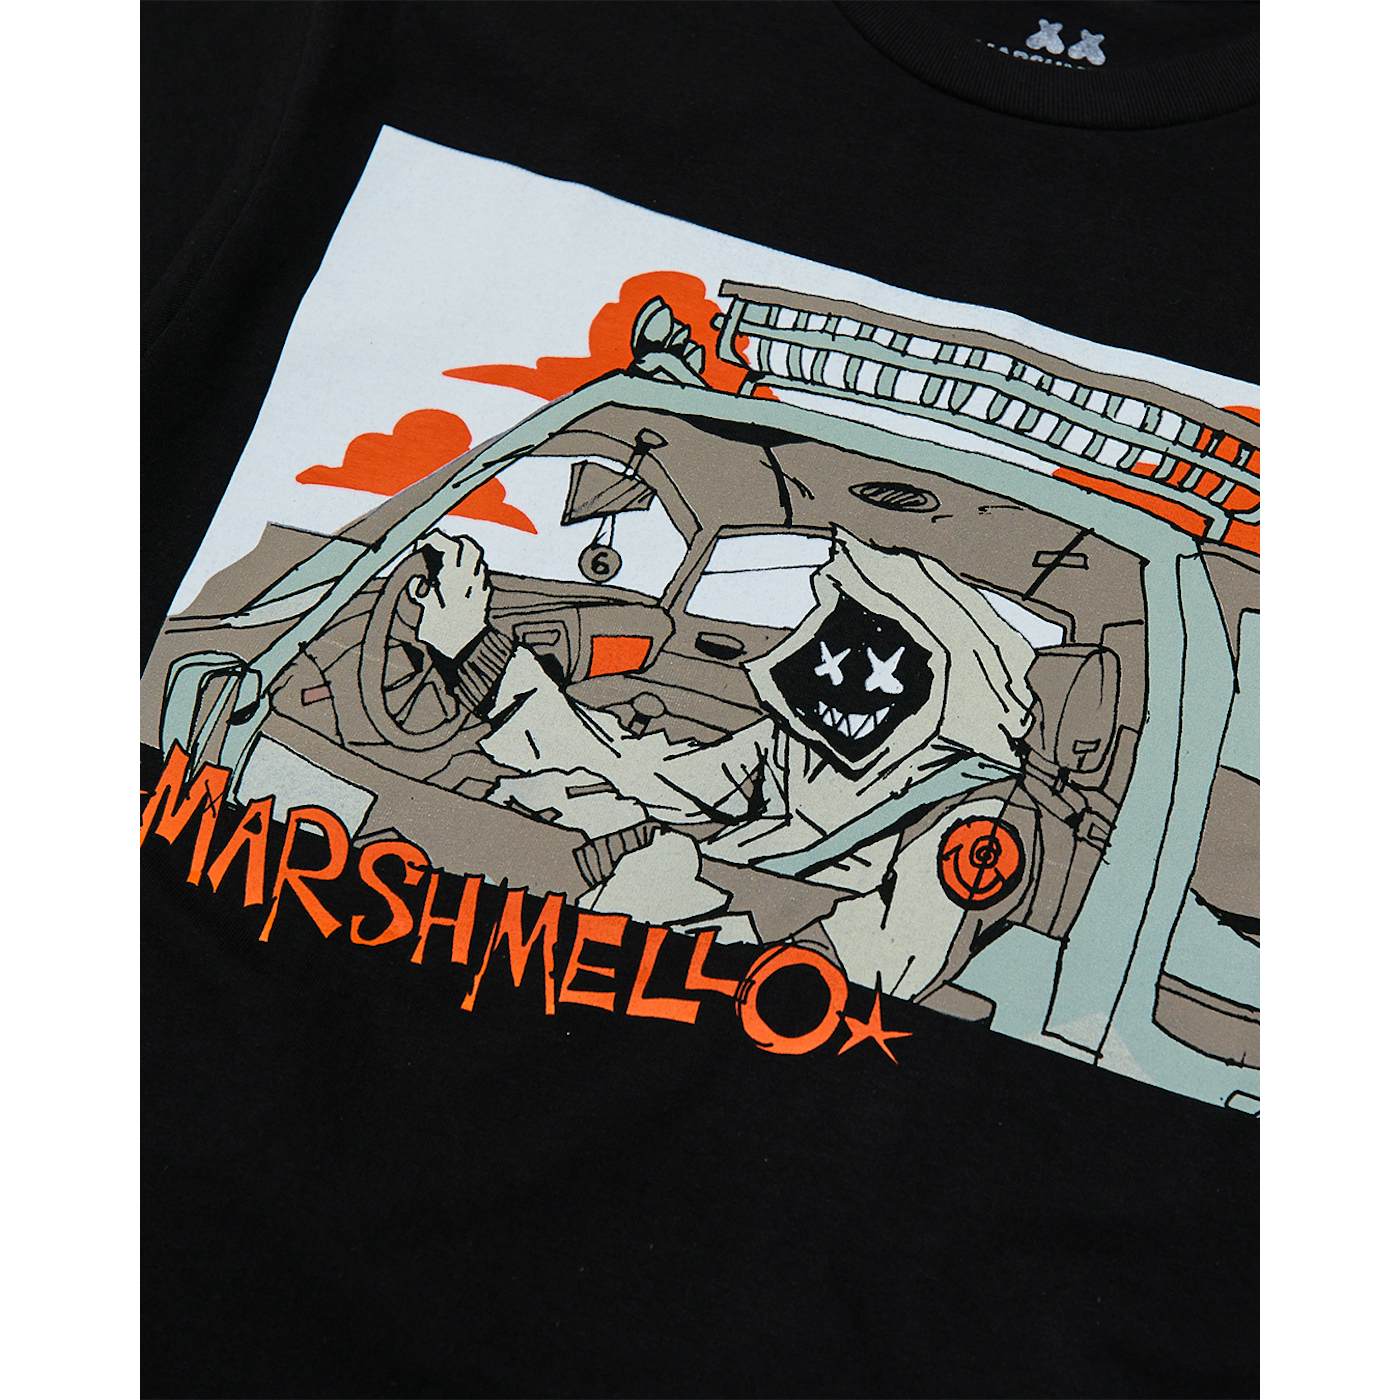 Marshmello Dirt Racer T-Shirt — Black